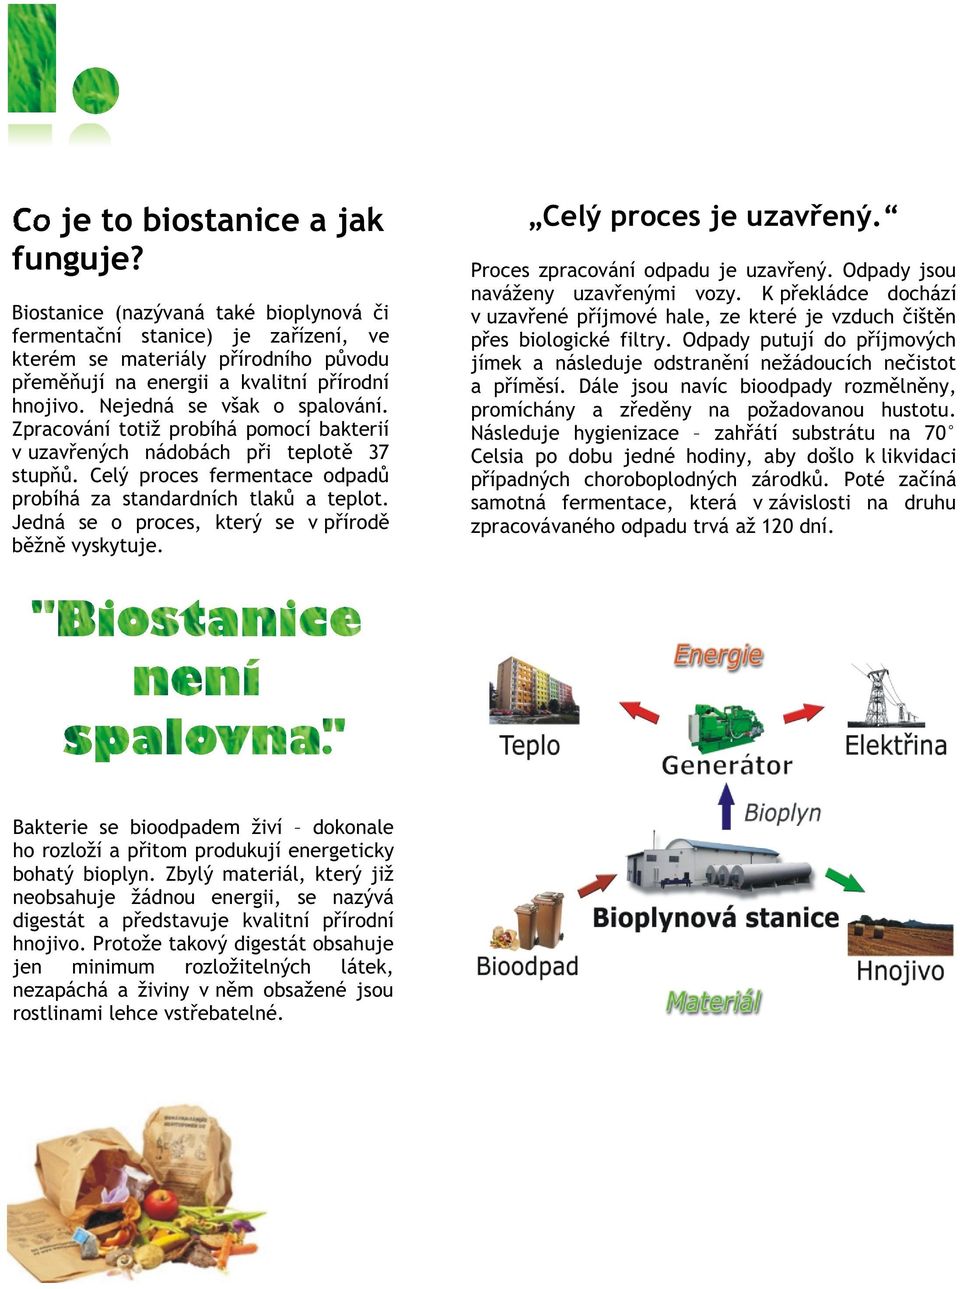 Jedná se o proces, který se v pøírodì bìžnì vyskytuje. Bakterie se bioodpadem živí dokonale ho rozloží a pøitom produkují energeticky bohatý bioplyn.